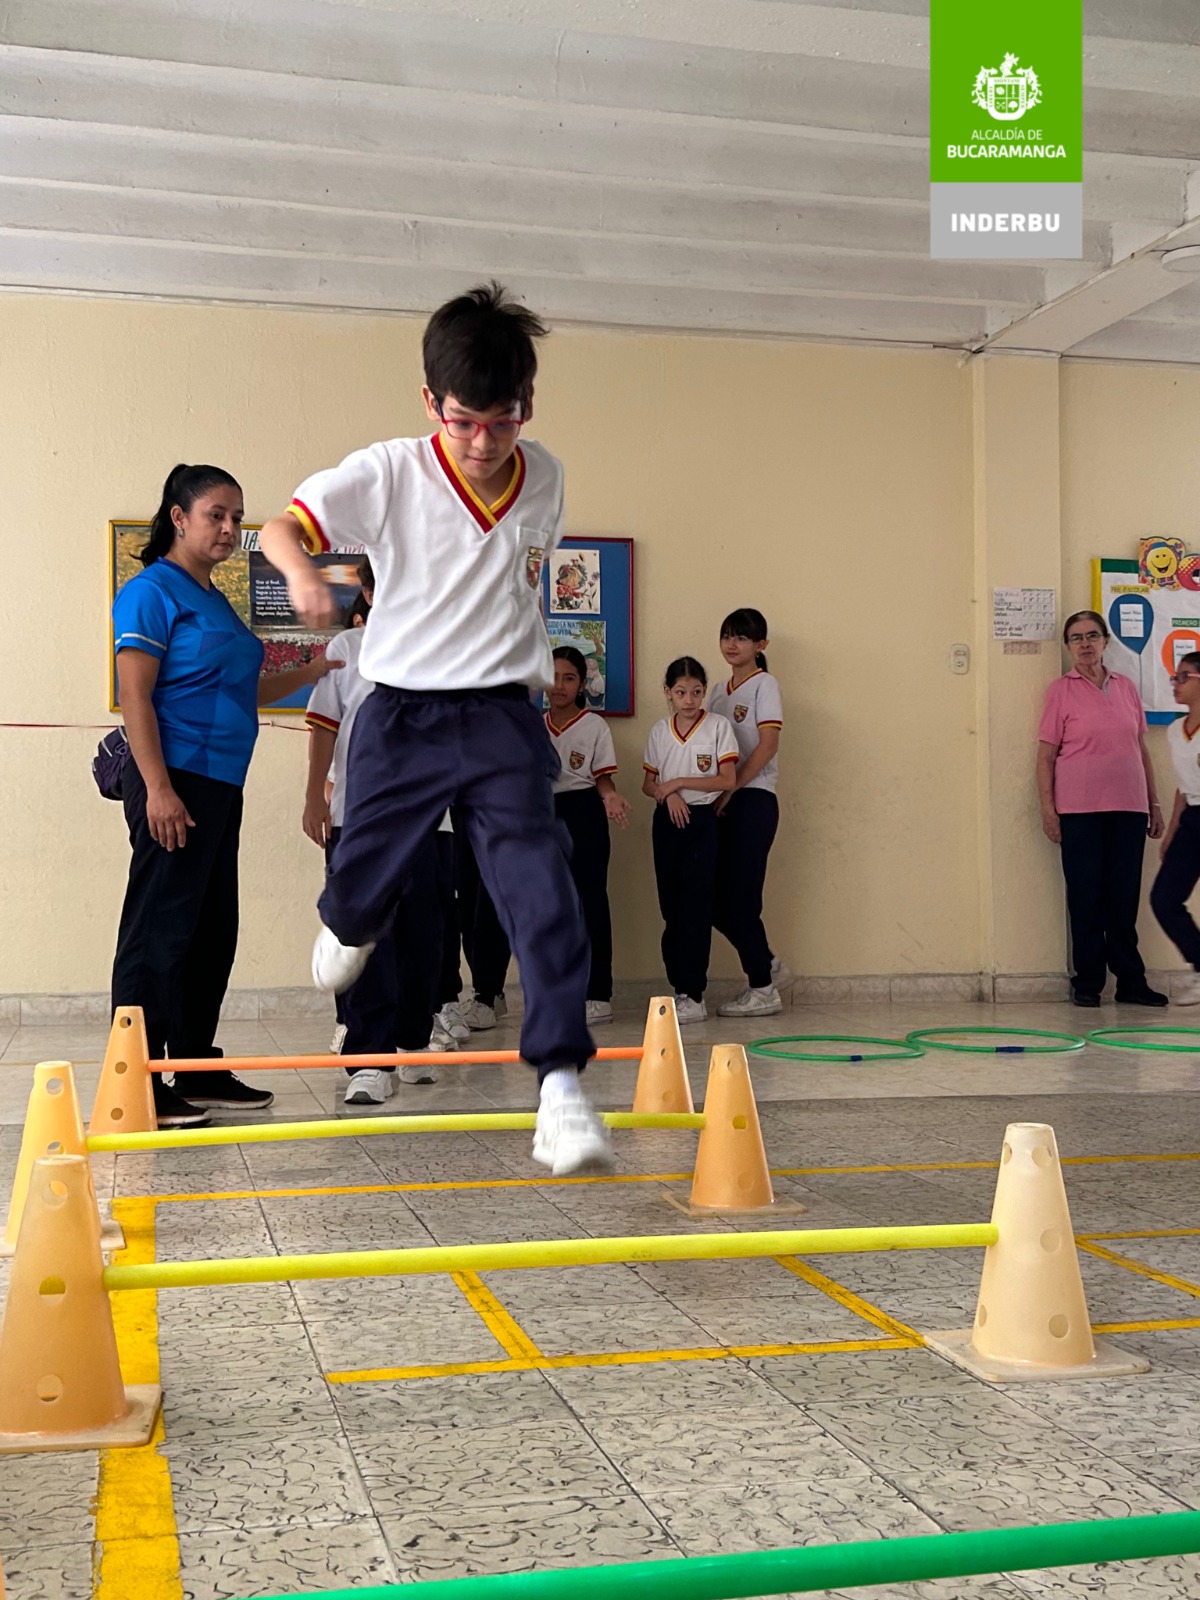 Festivales de habilidades, estrategia depromoción de los Juegos Intercolegiados en Bucaramanga